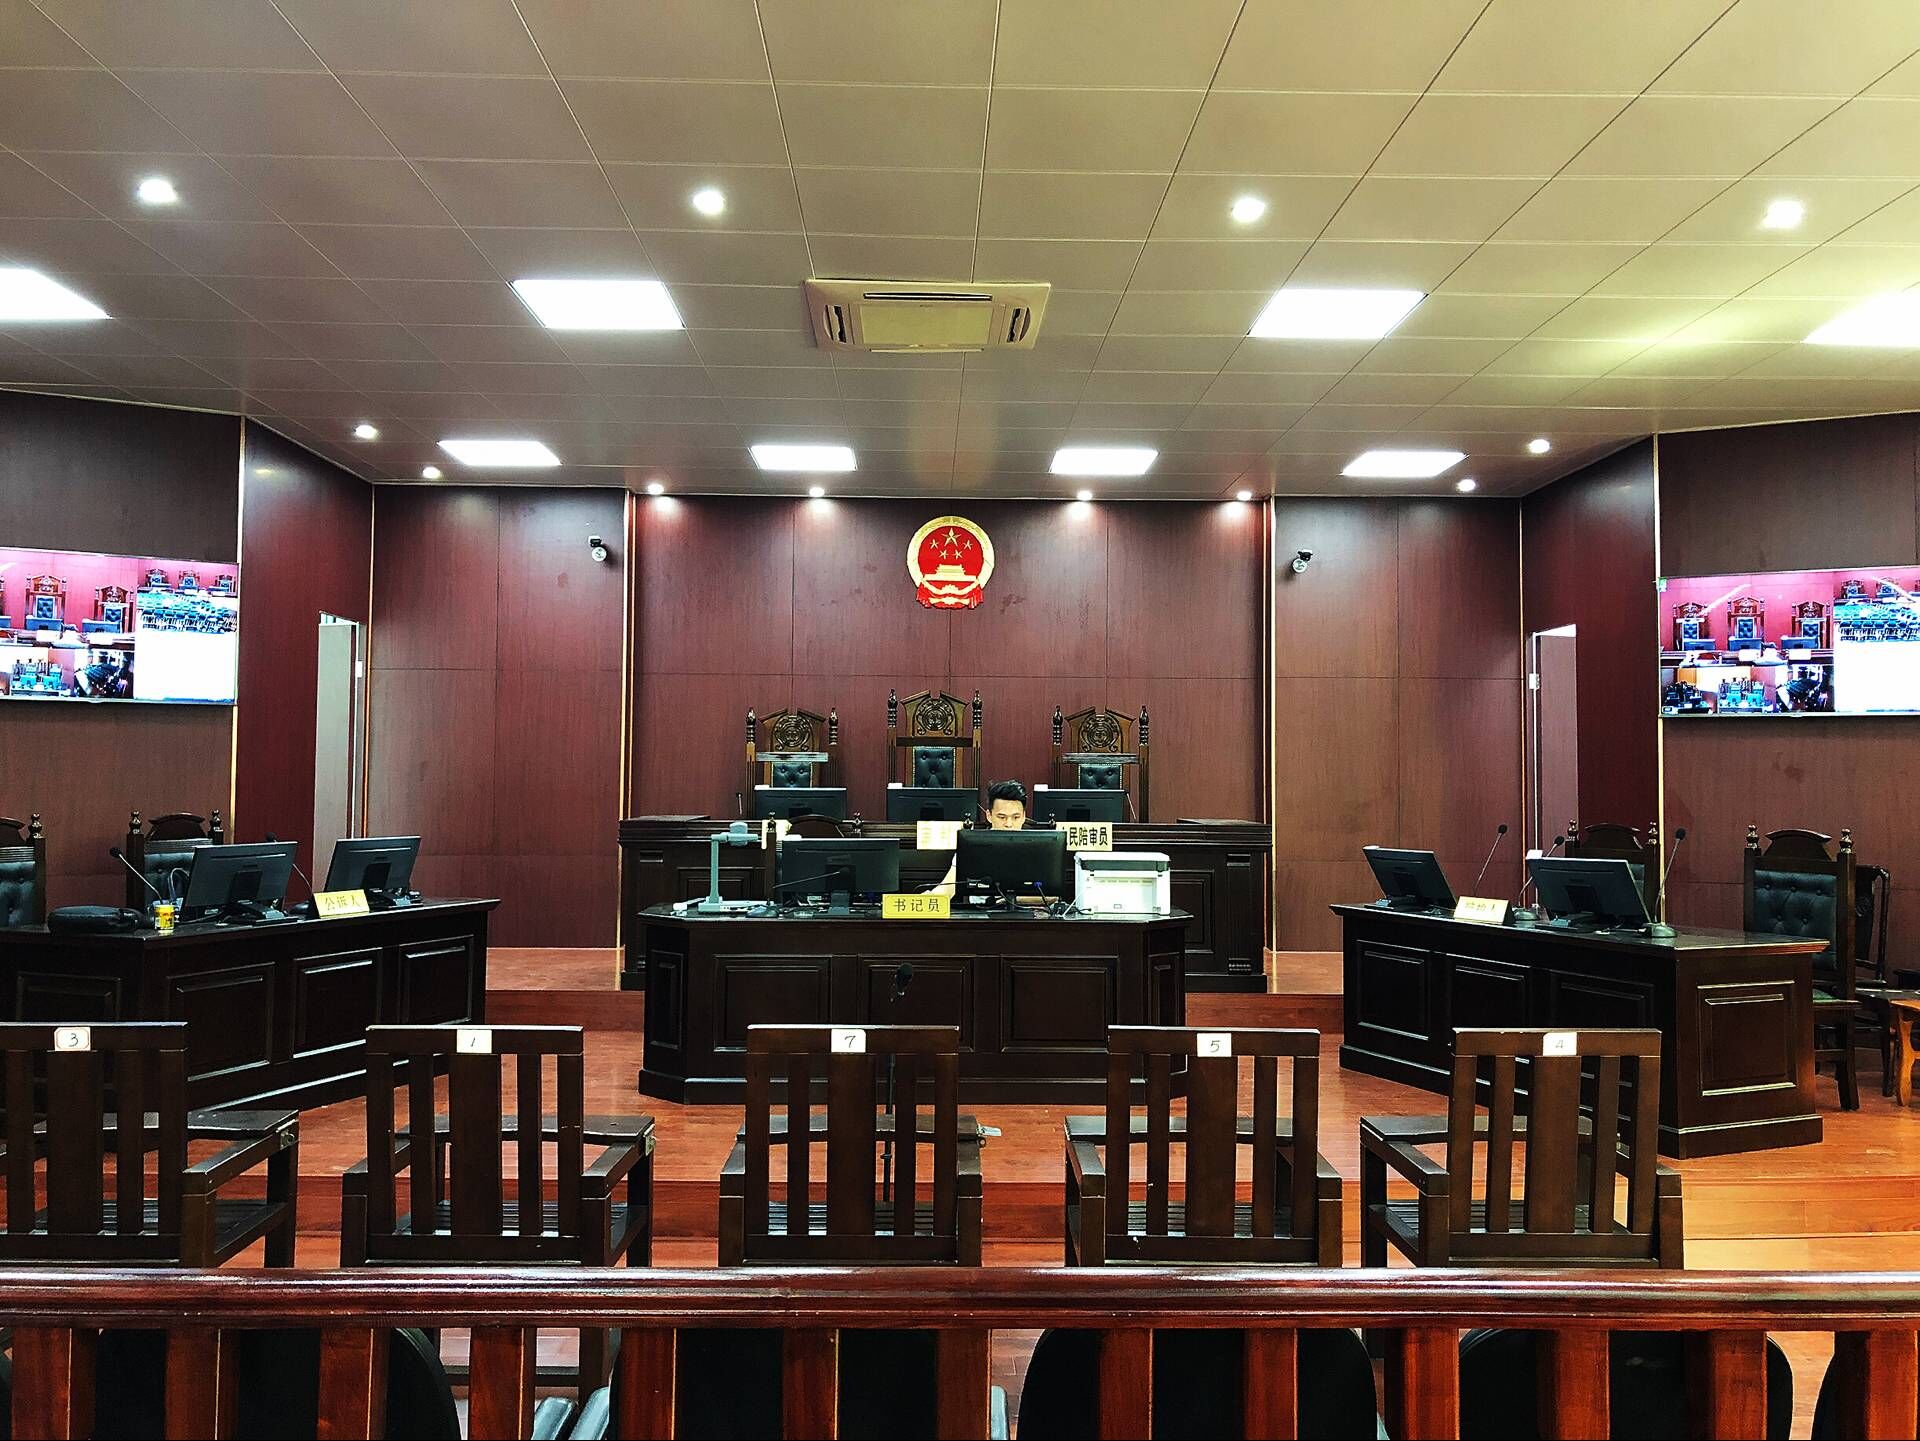 国际商事法庭 | CICC - 最高人民法院第一国际商事法庭首次启用新法庭 公开开庭审理案件